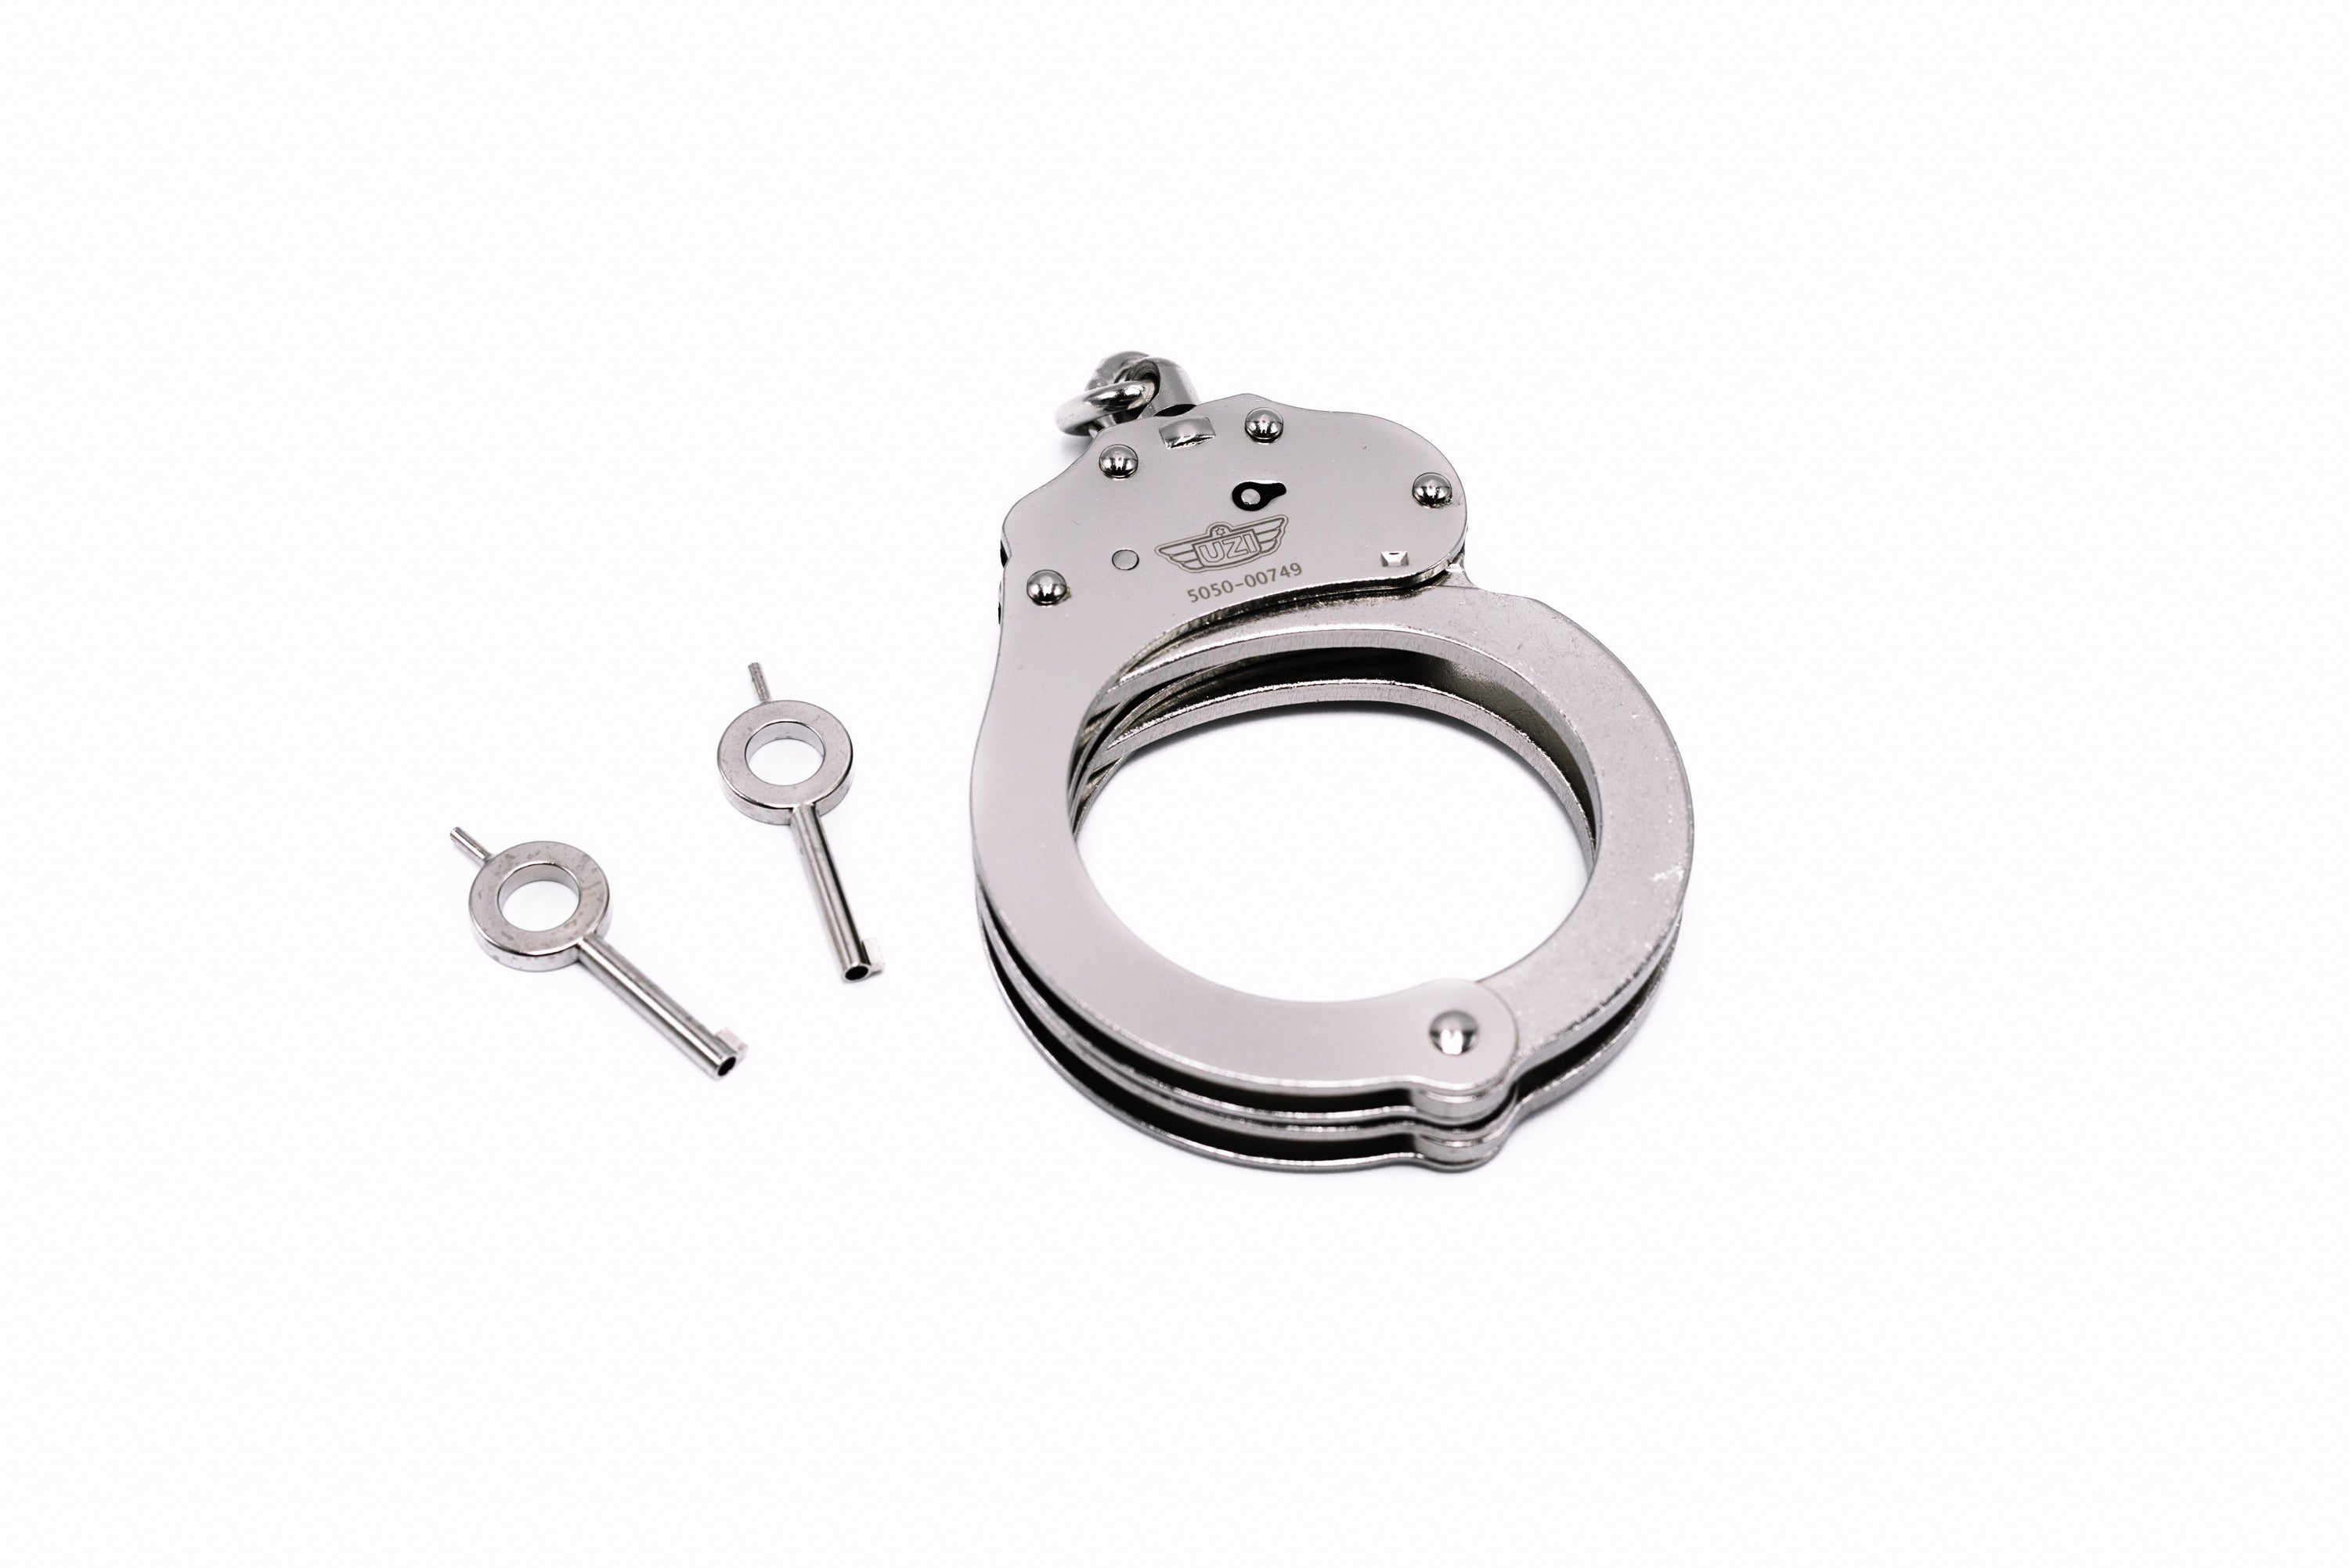 UZI Professional Handcuff - Silver